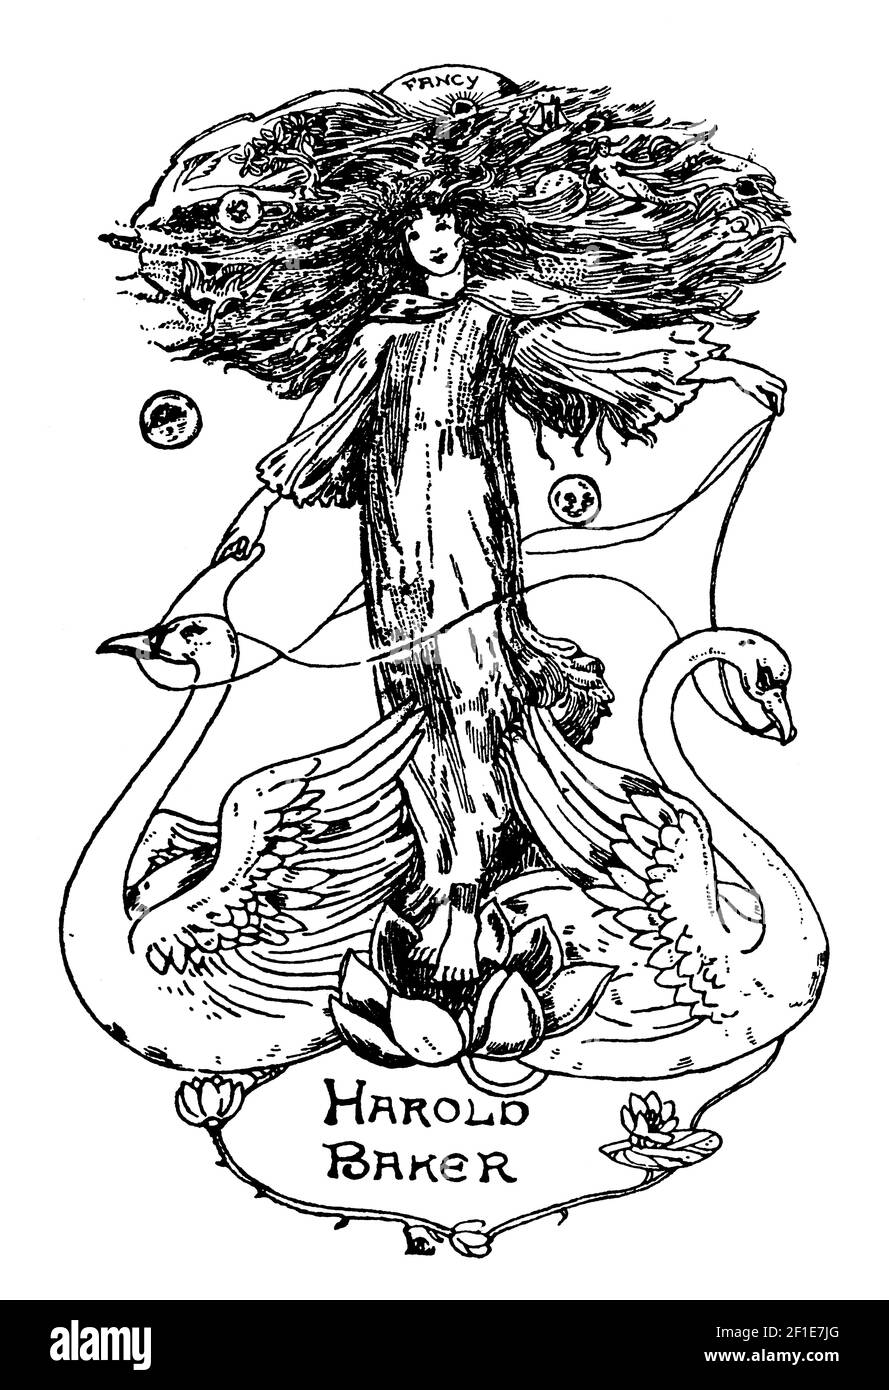 Femme avec deux swans bibliothèque conçue pour Harold Baker par l'auteur, poète et illustrateur Celia Levetus Banque D'Images